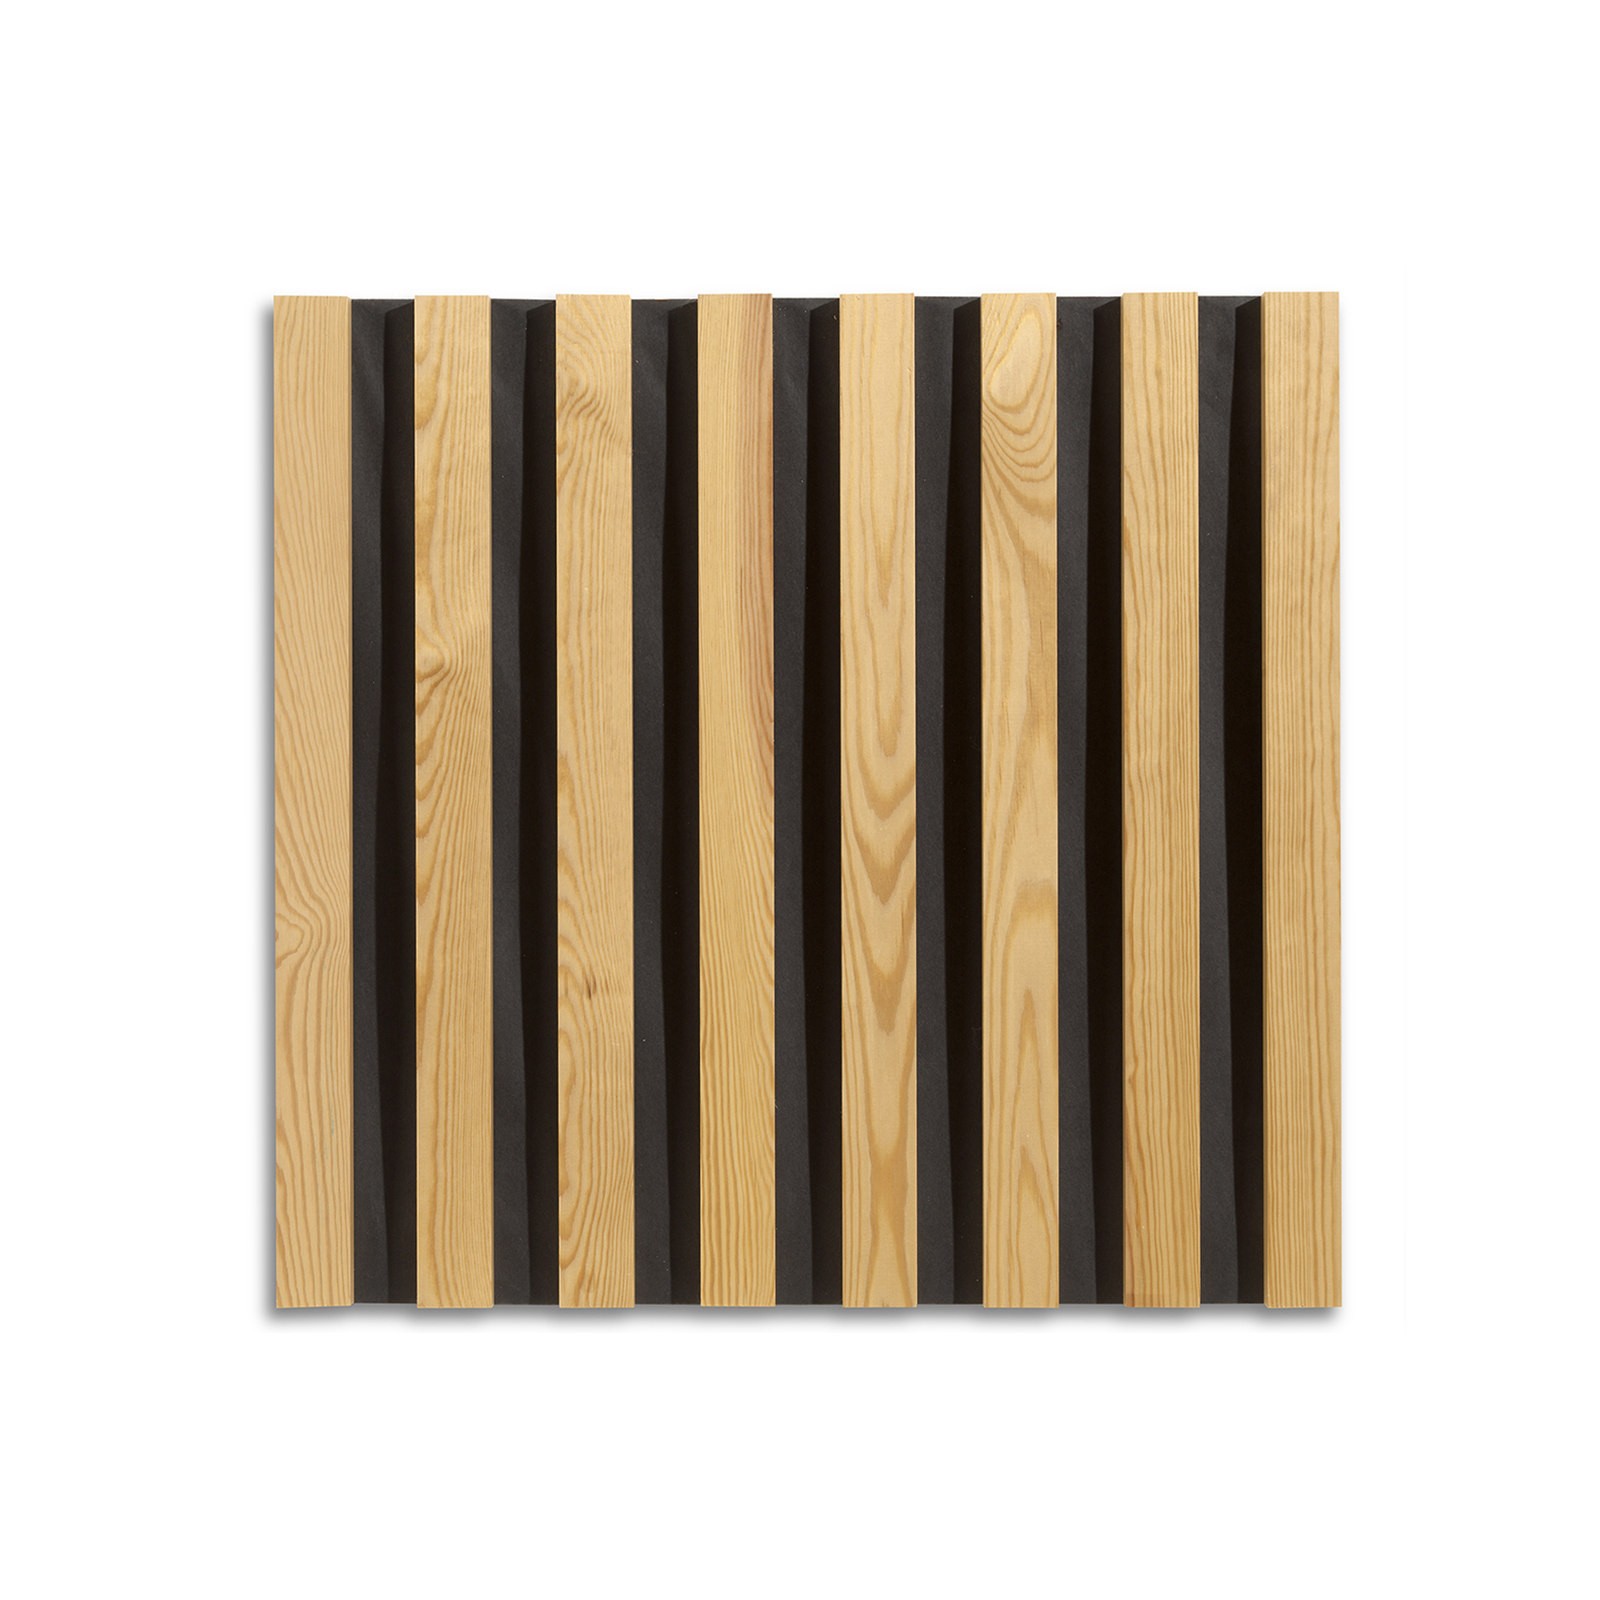 Los listones de madera lineares ignifugan para adornar los paneles acústicos  de madera fonoabsorbentes